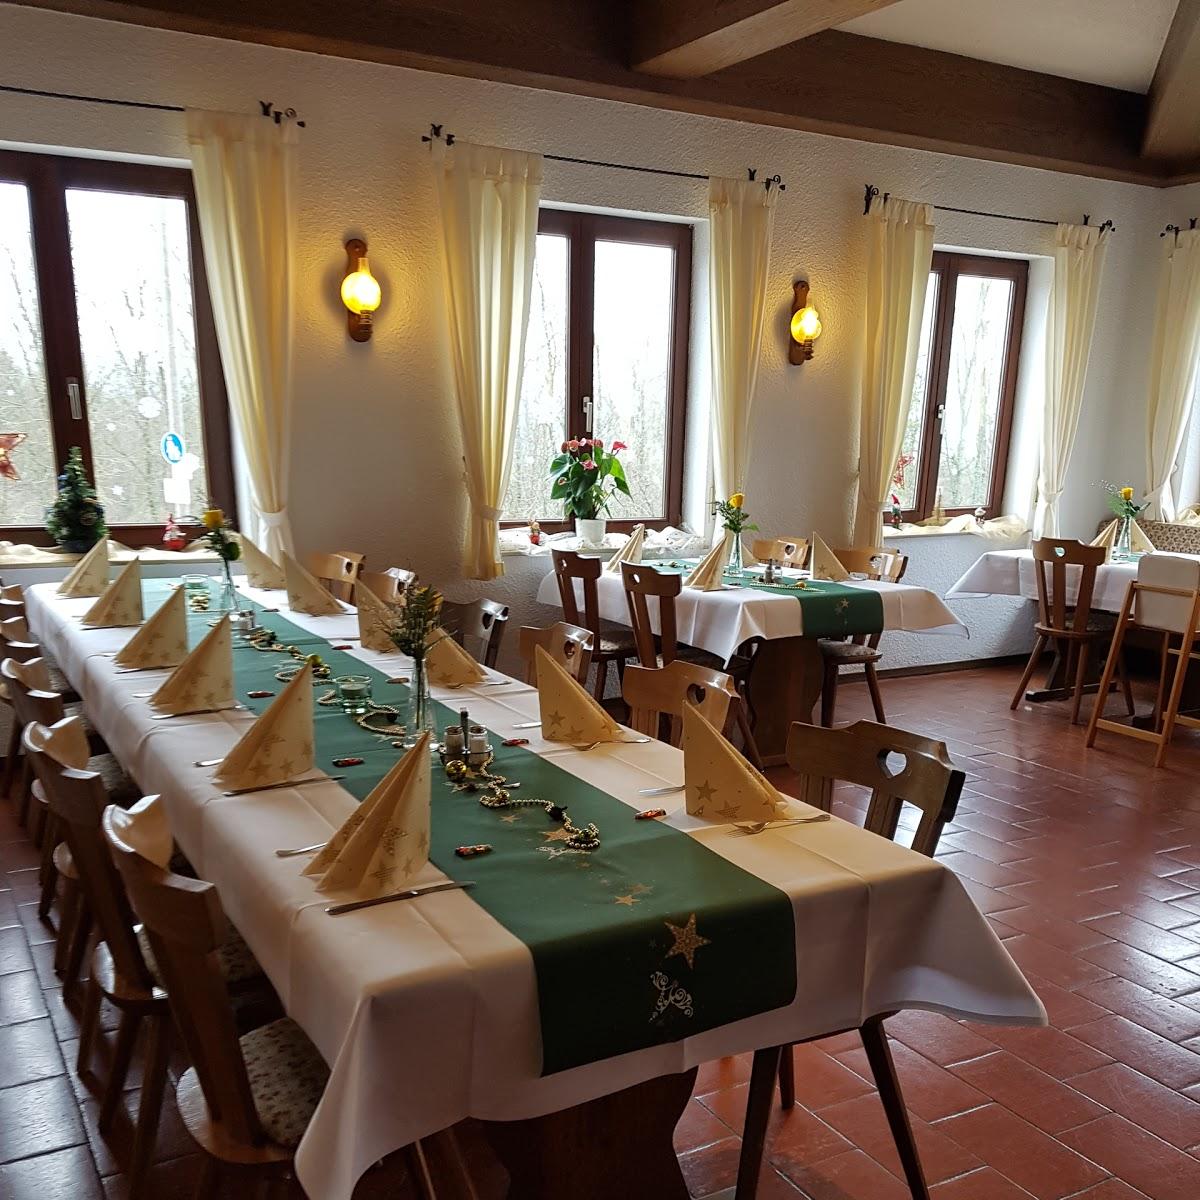 Restaurant "Armin Unkauf Höhengaststätte Sinzenburgan" in Aspach